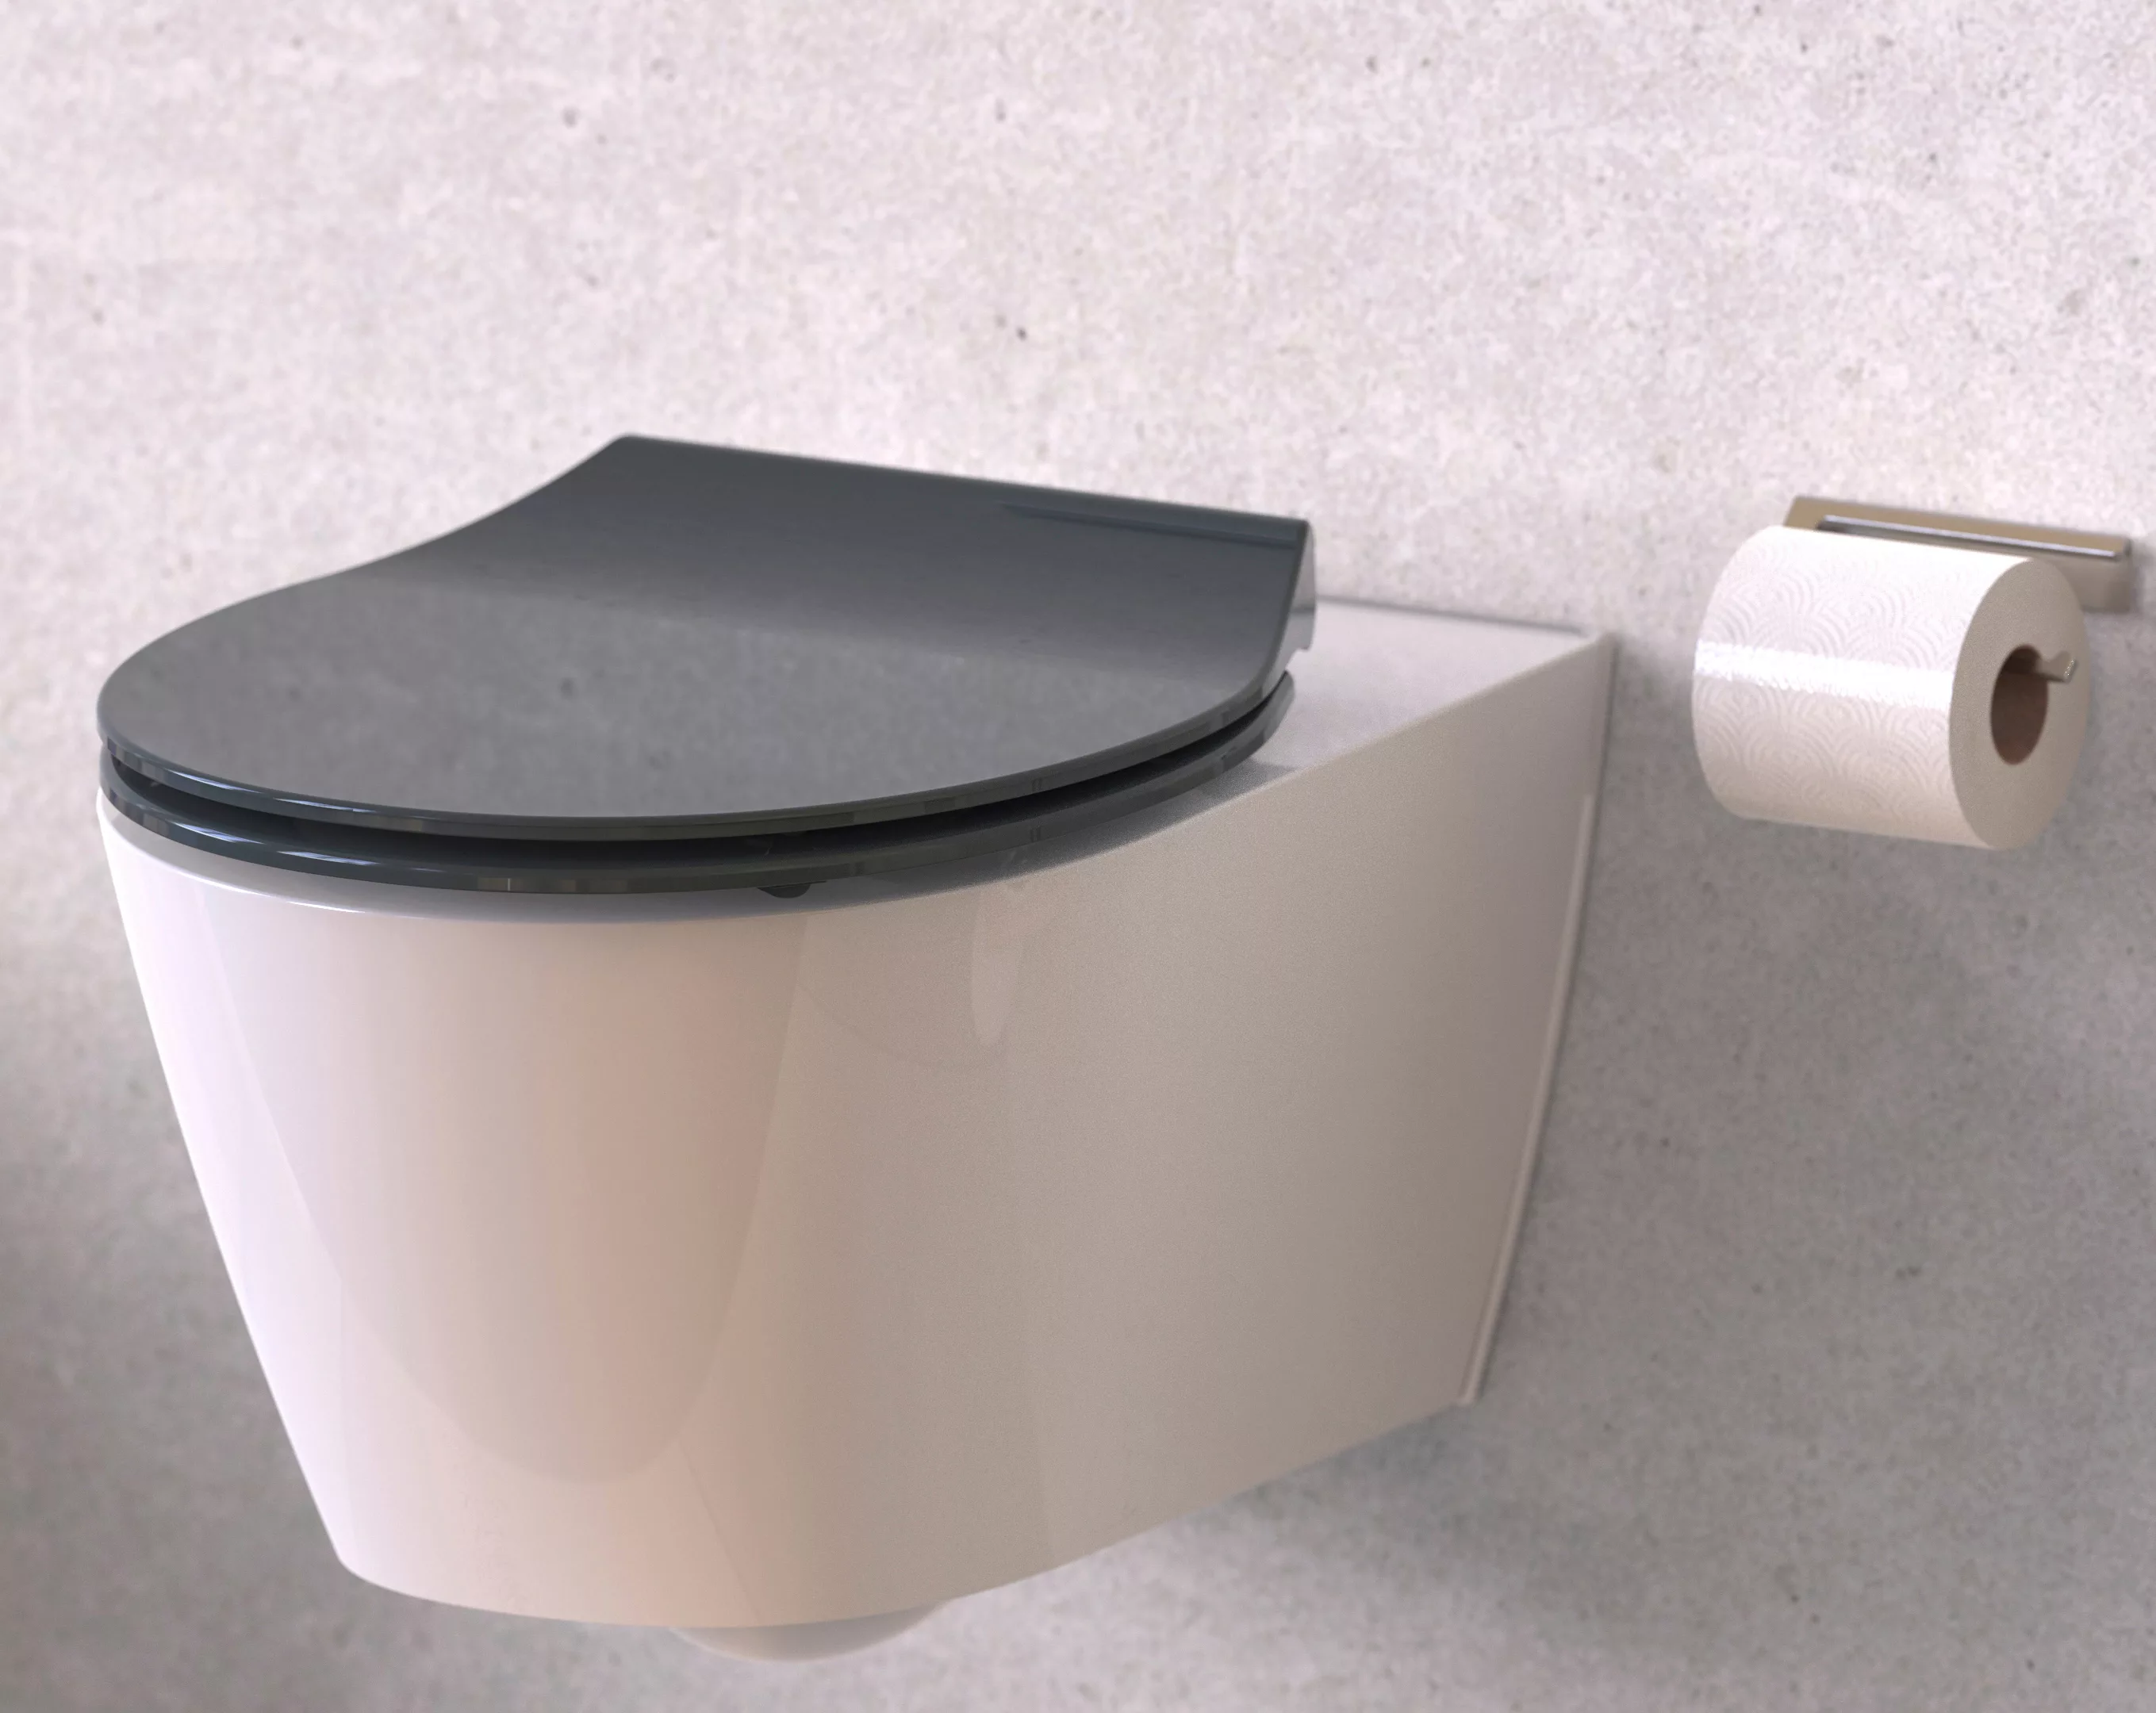 Schütte WC-Sitz »SLIM« günstig online kaufen